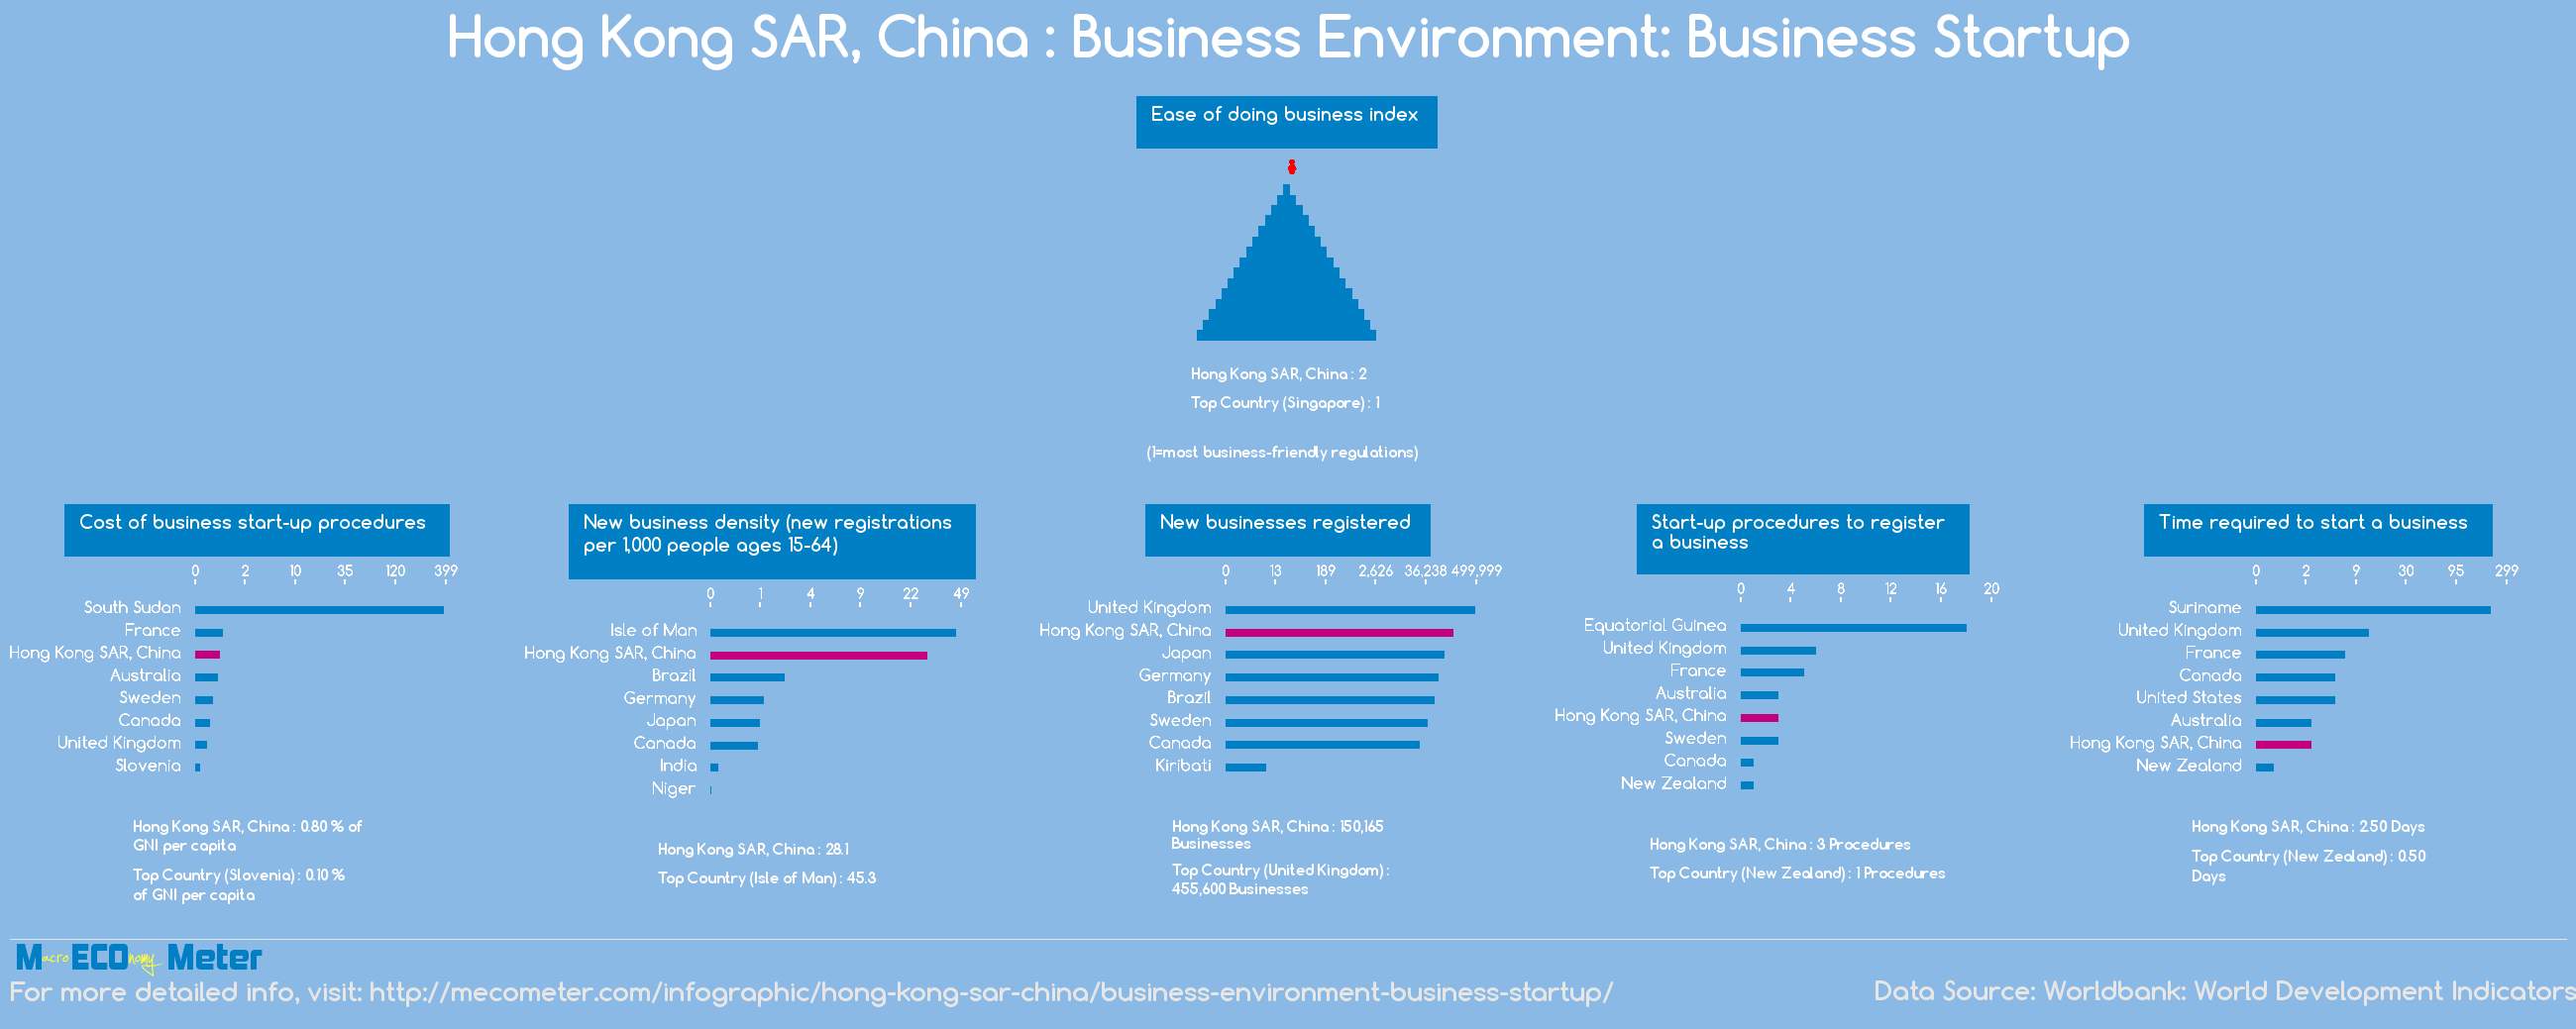 Hong Kong SAR, China : Business Environment: Business Startup